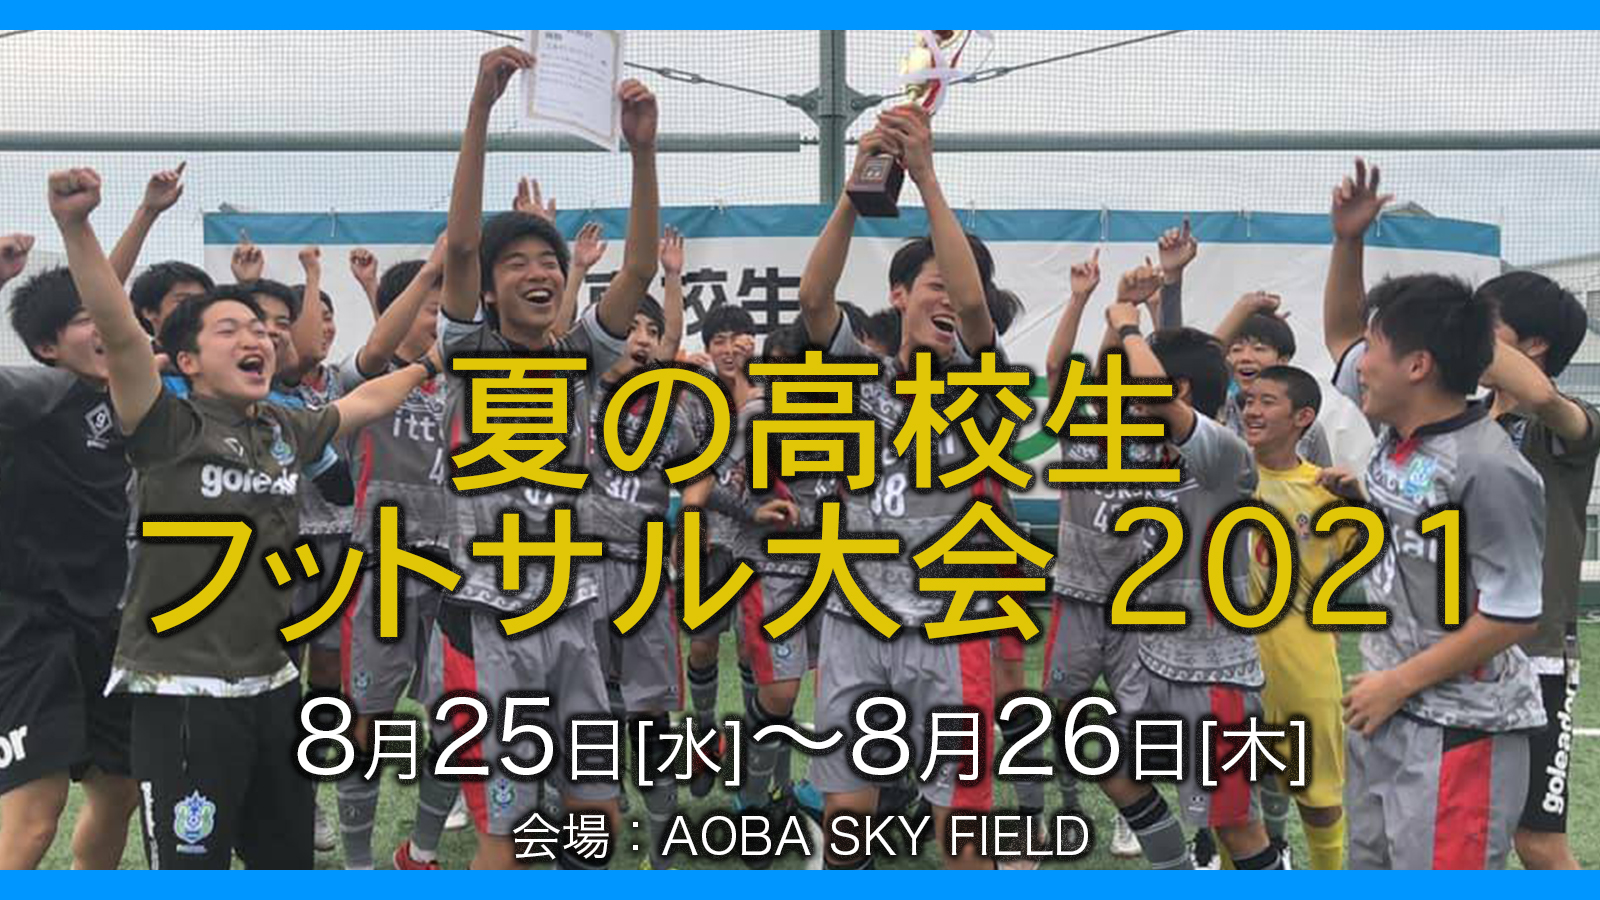 夏の高校生フットサル大会21を開催 一般社団法人日本ミニフットボール協会のプレスリリース